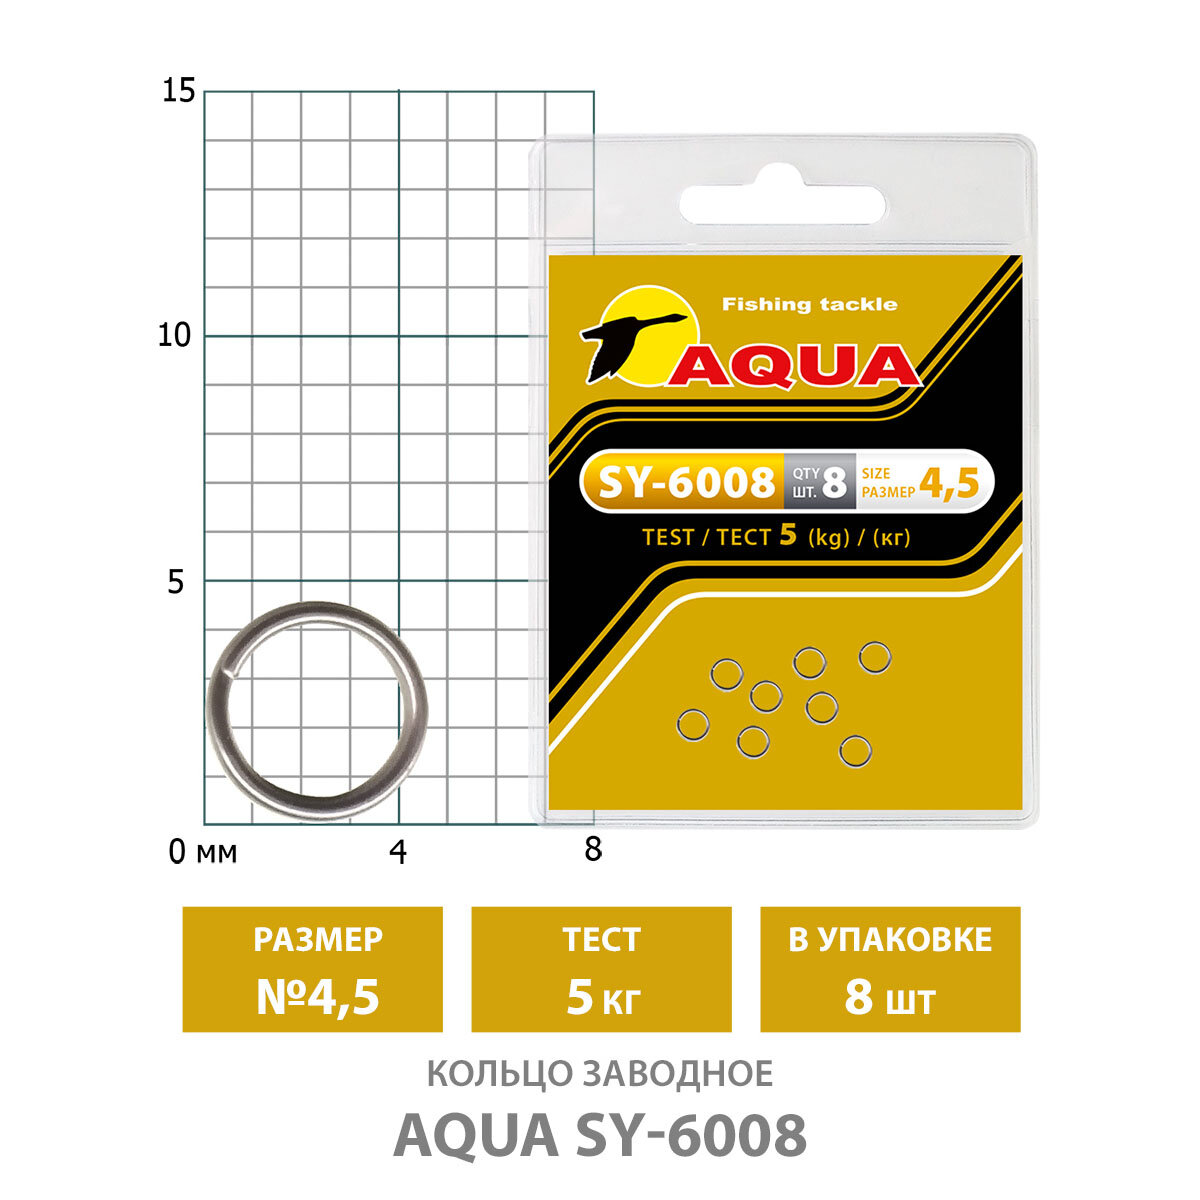 Кольцо заводное для рыбалки AQUA SY-6008 8mm 20kg 2уп по 8шт